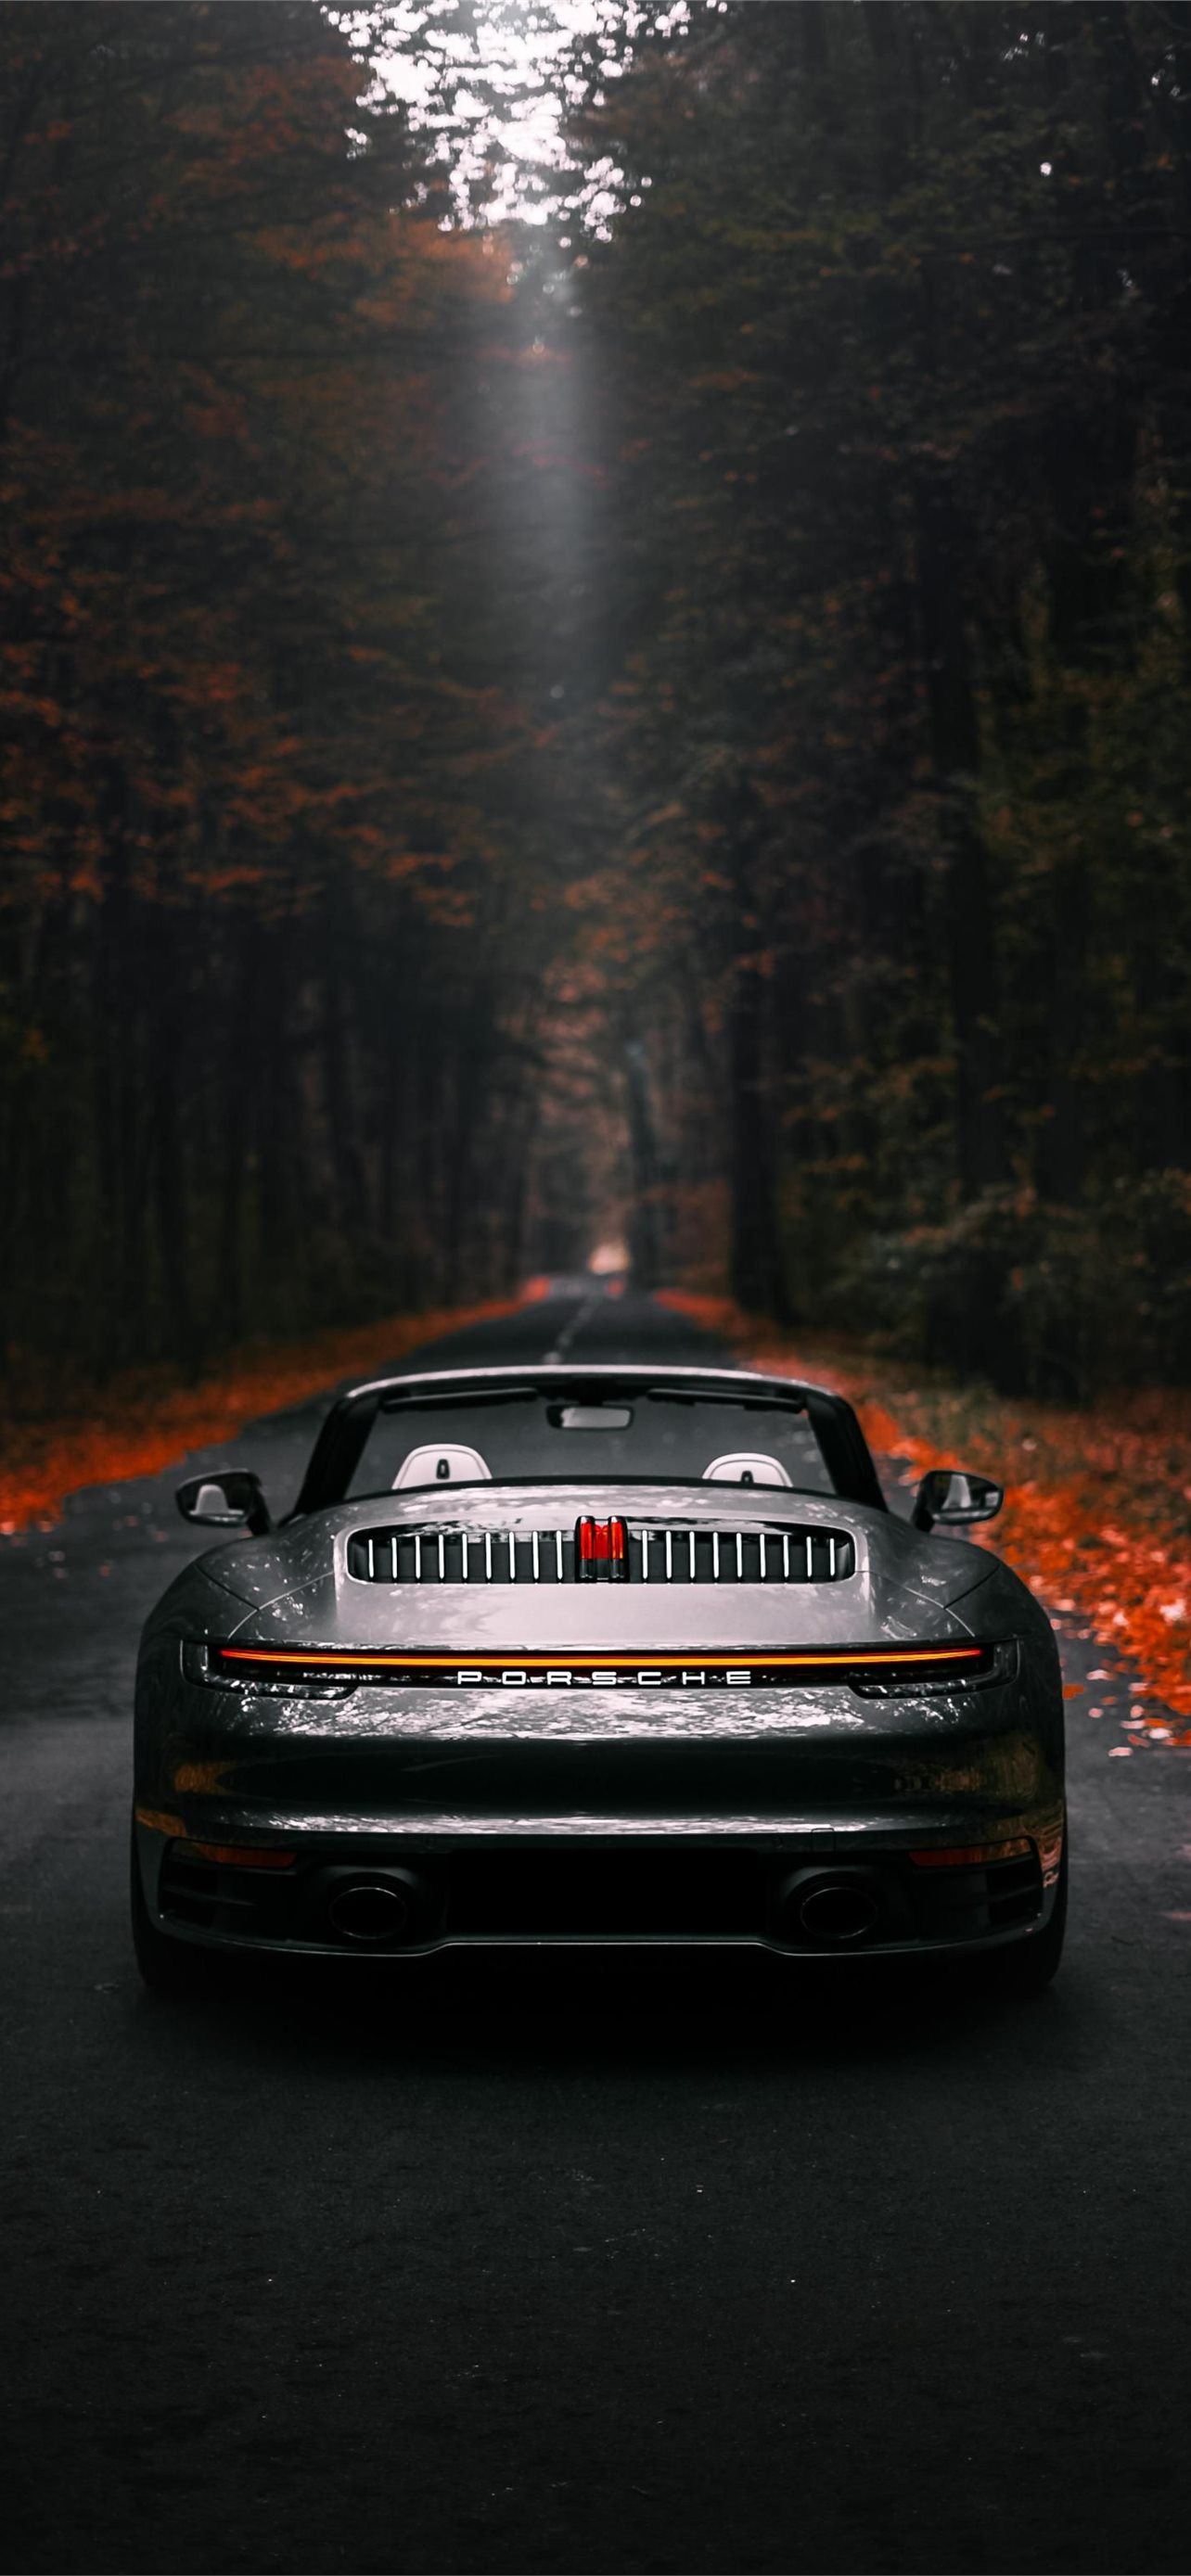 Với nắp cứng mềm mại và đầy cá tính, Porsche 911 Cabriolet iPhone Wallpaper sẽ là vật dụng không thể thiếu cho những ai yêu thích phong cách và xe hơi.